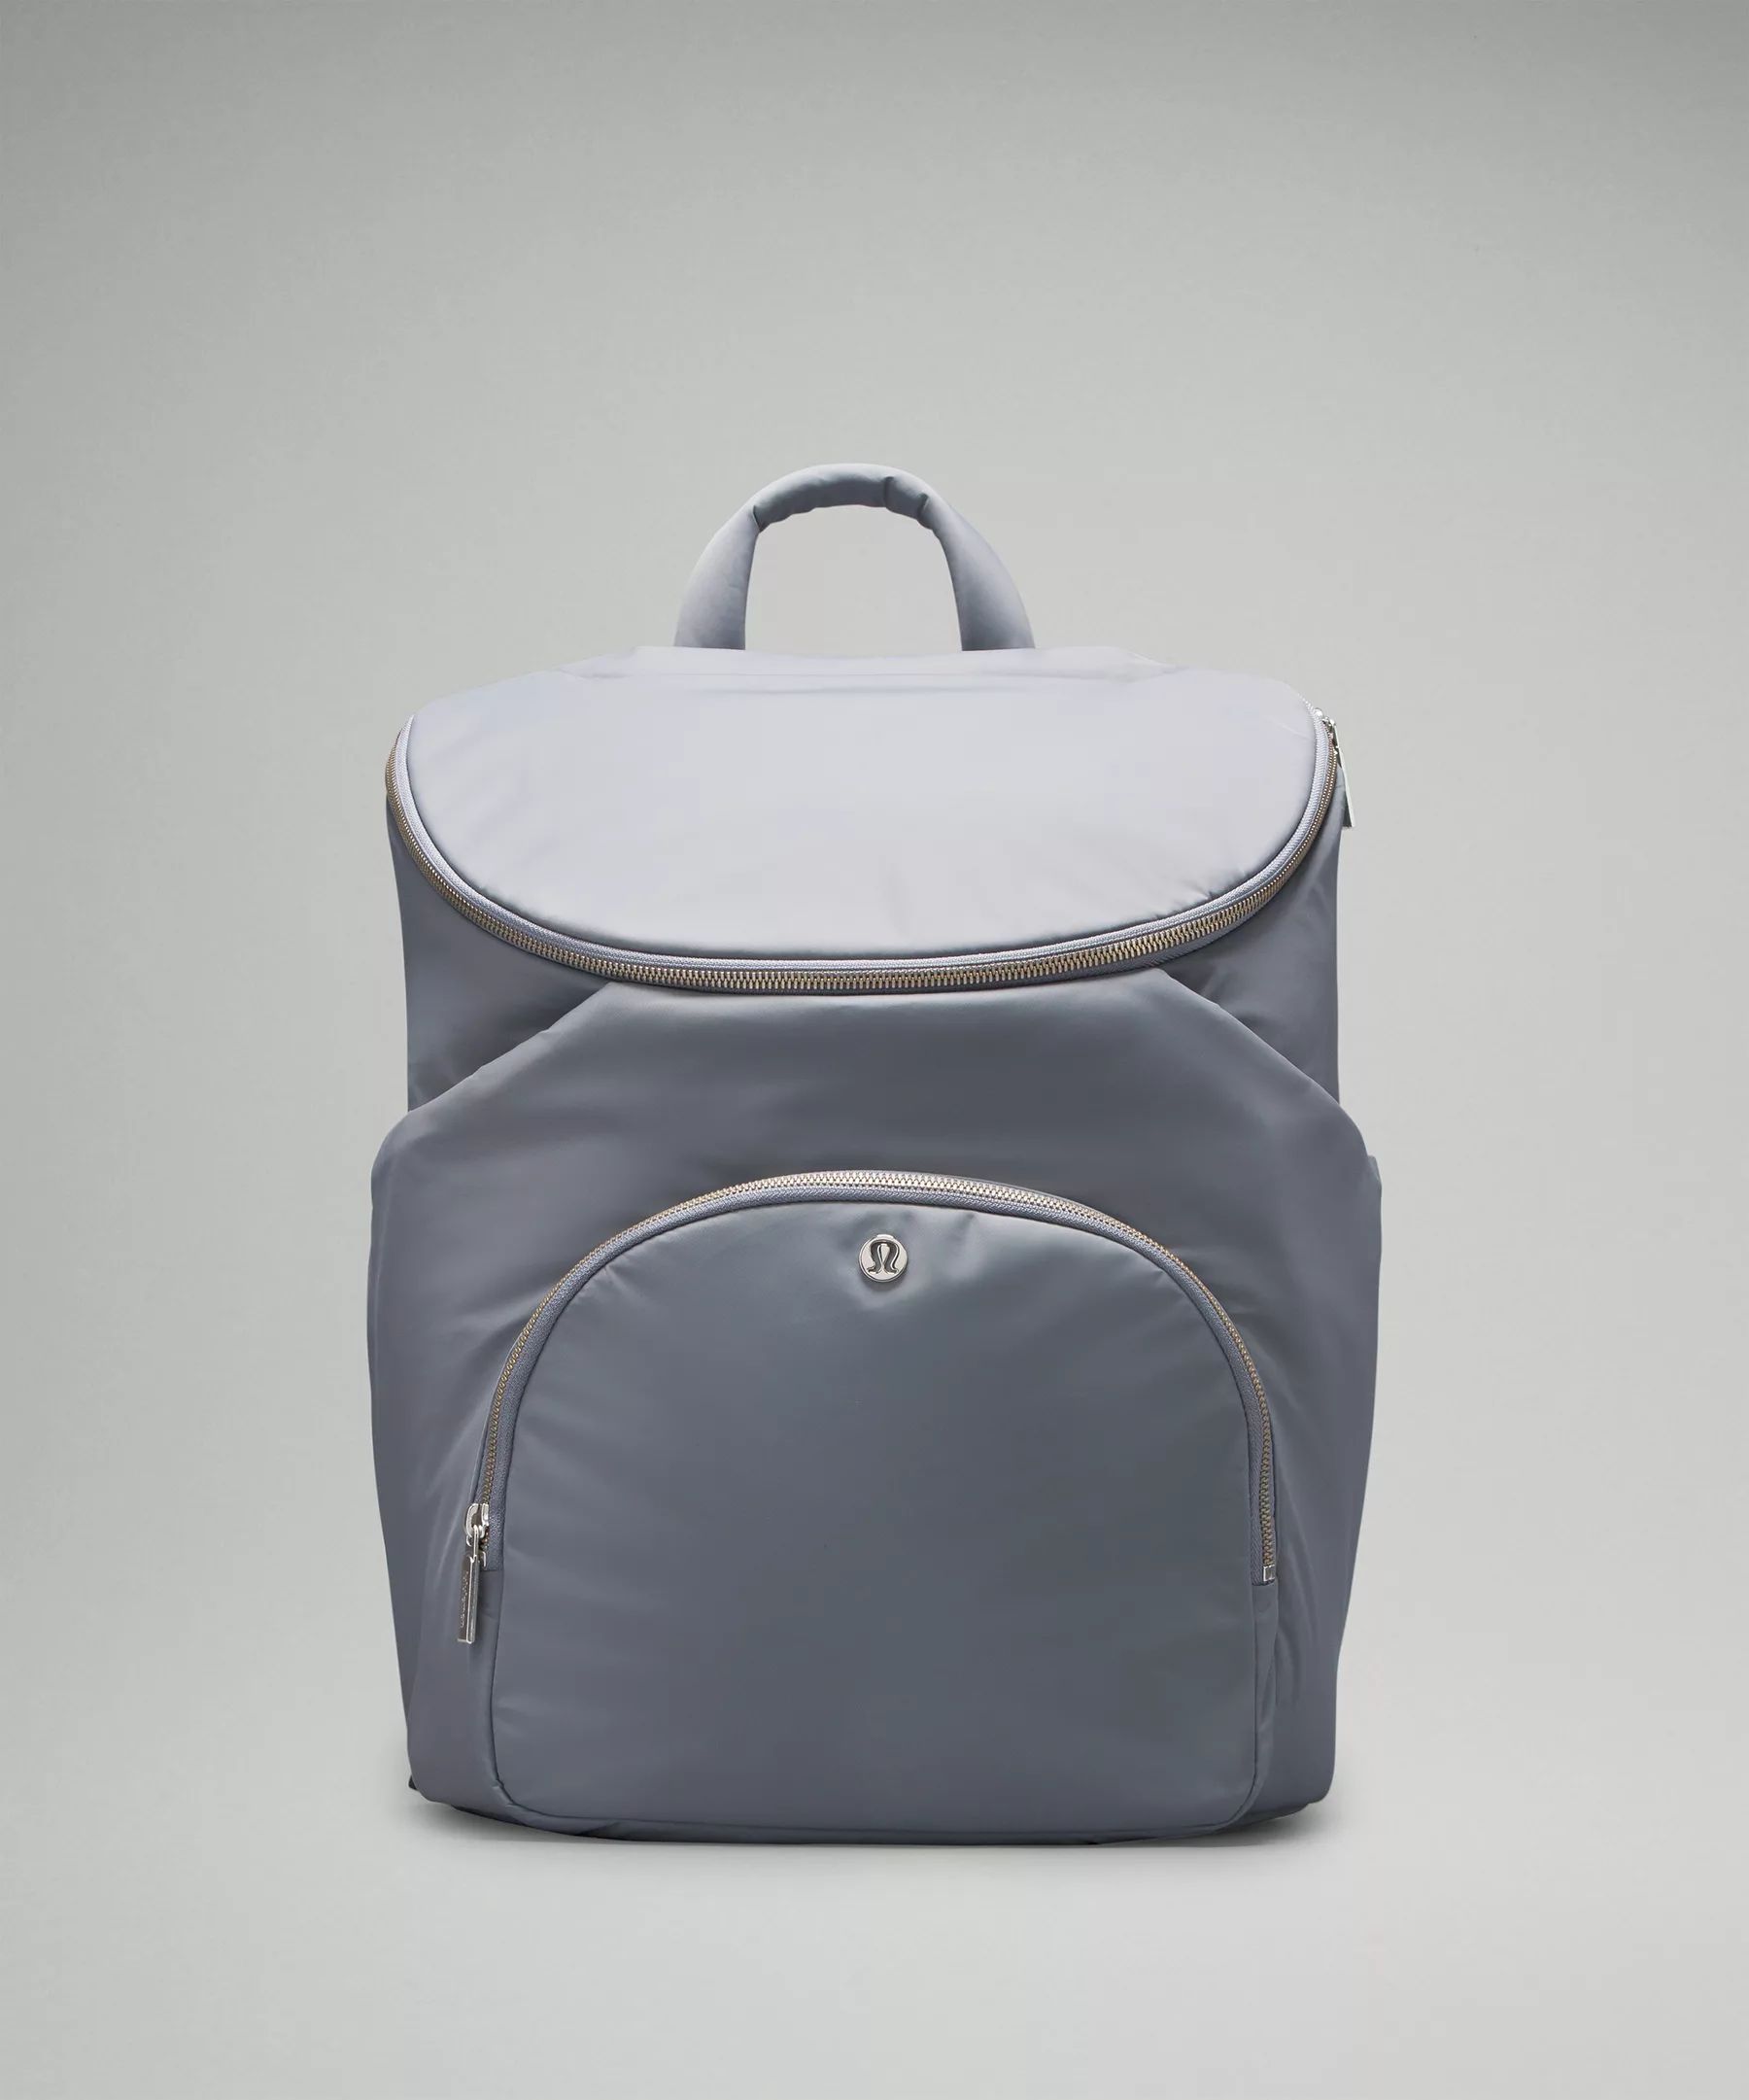 New Parent Backpack 17L | Lululemon (US)